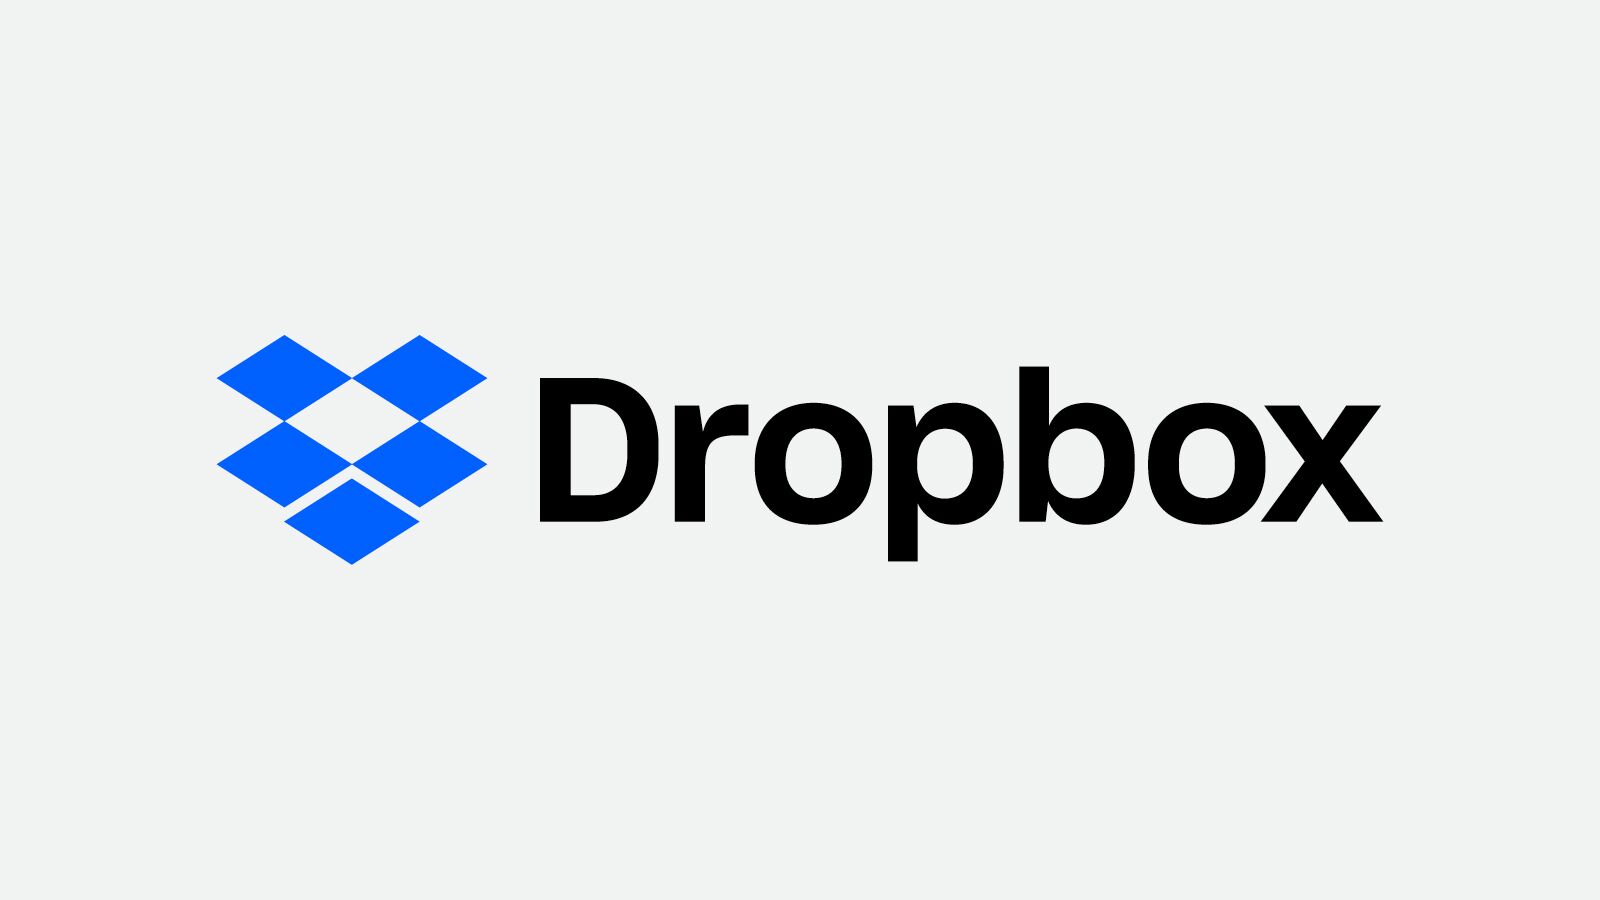 Фирменный стиль - Dropbox